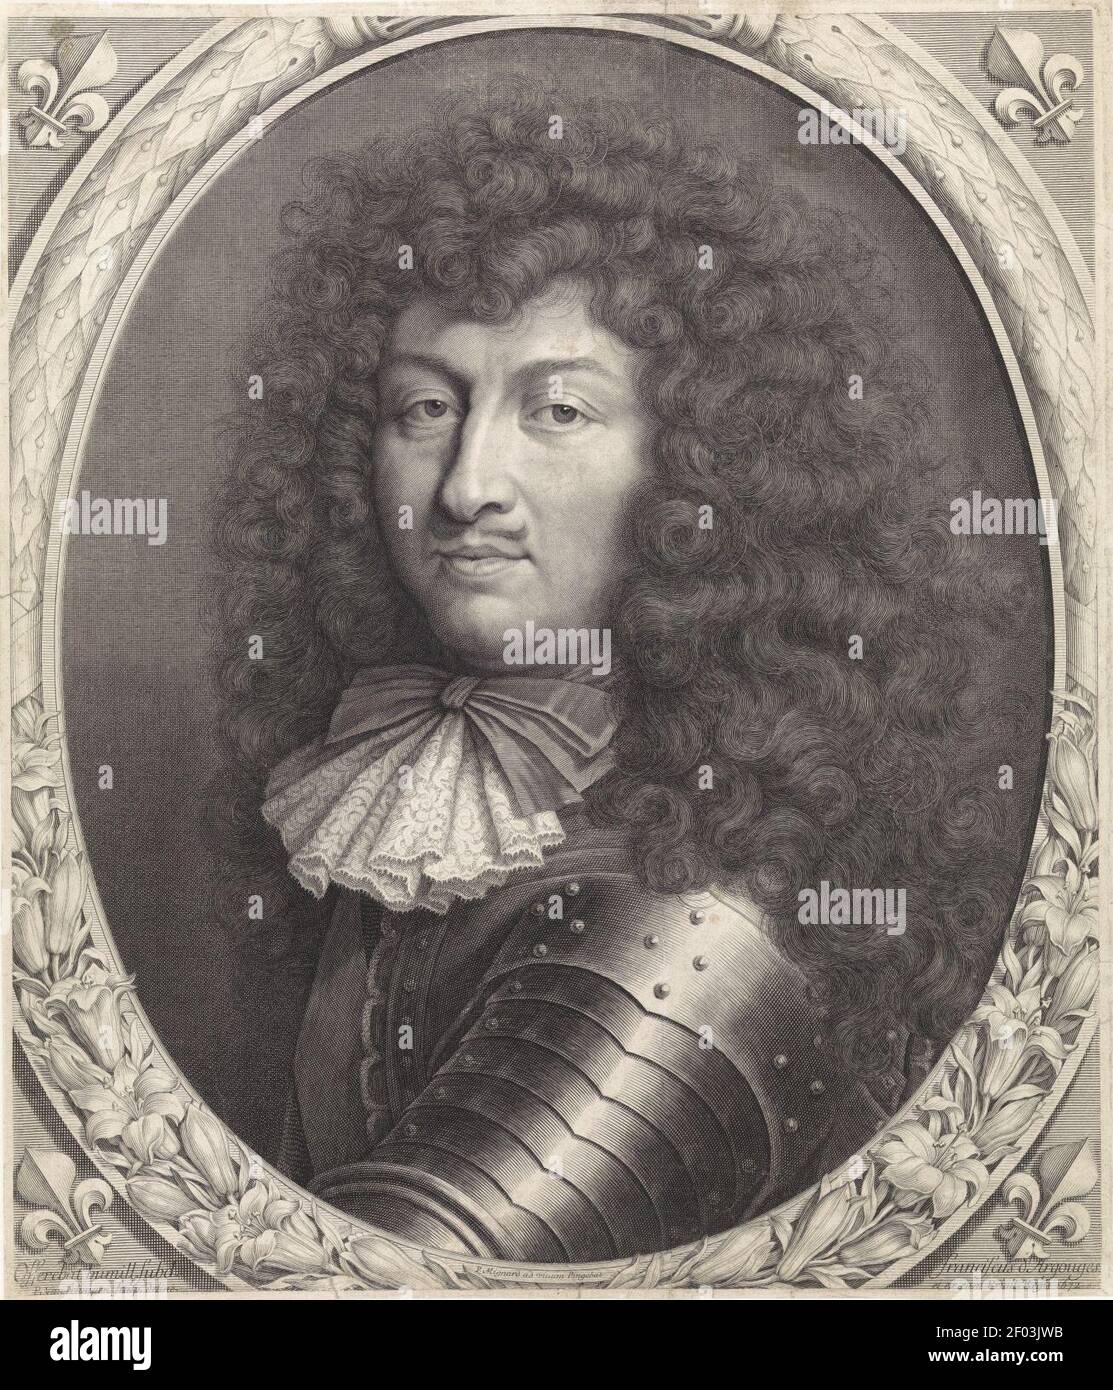 Pieter van Schuppen - Portrait of Louis XIV of France. Stock Photo